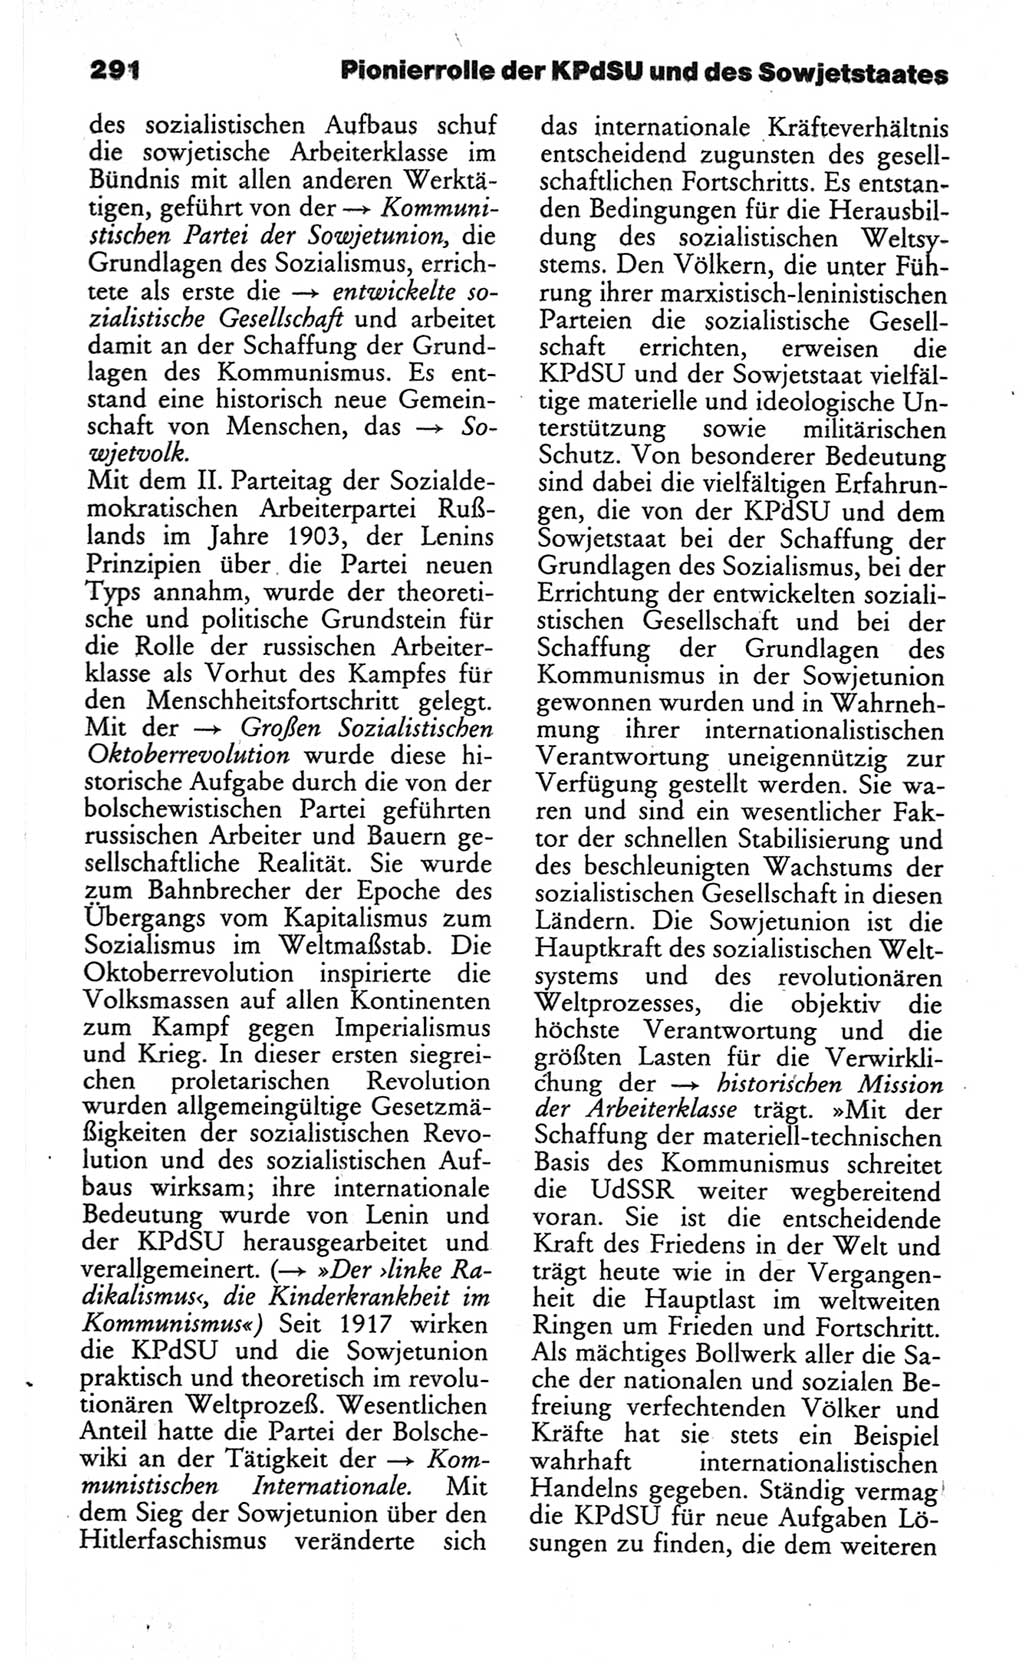 Wörterbuch des wissenschaftlichen Kommunismus [Deutsche Demokratische Republik (DDR)] 1982, Seite 291 (Wb. wiss. Komm. DDR 1982, S. 291)